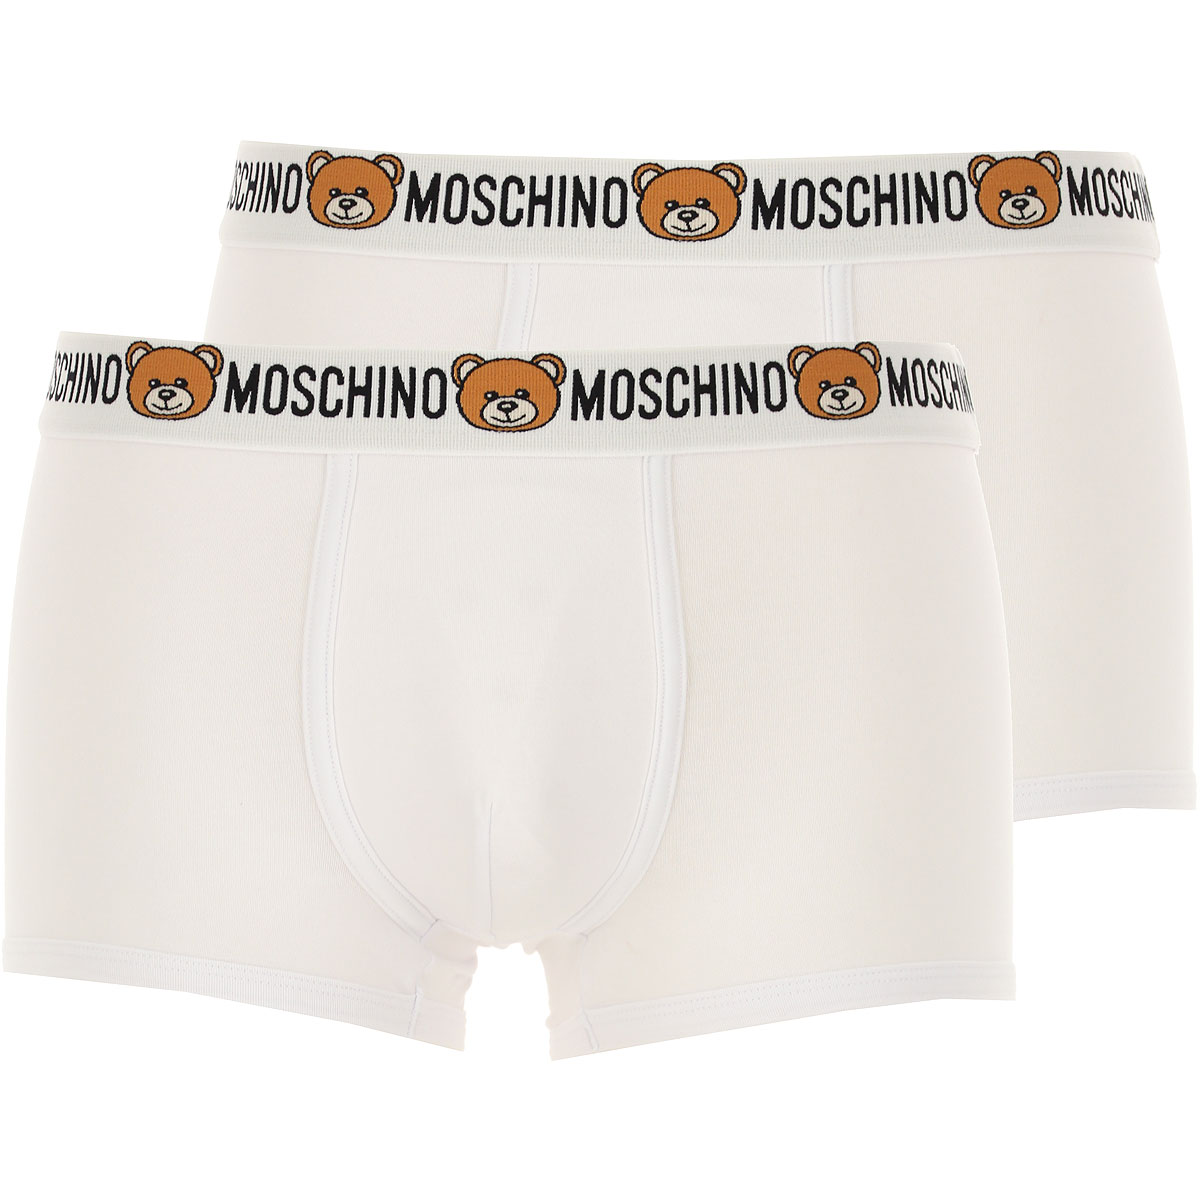 Moschino Boxer Shorts für Herren, Unterhose, Short, Boxer Günstig im Sale, 2 Pack, Weiss, Baumwolle, 2017, L M S XL XS